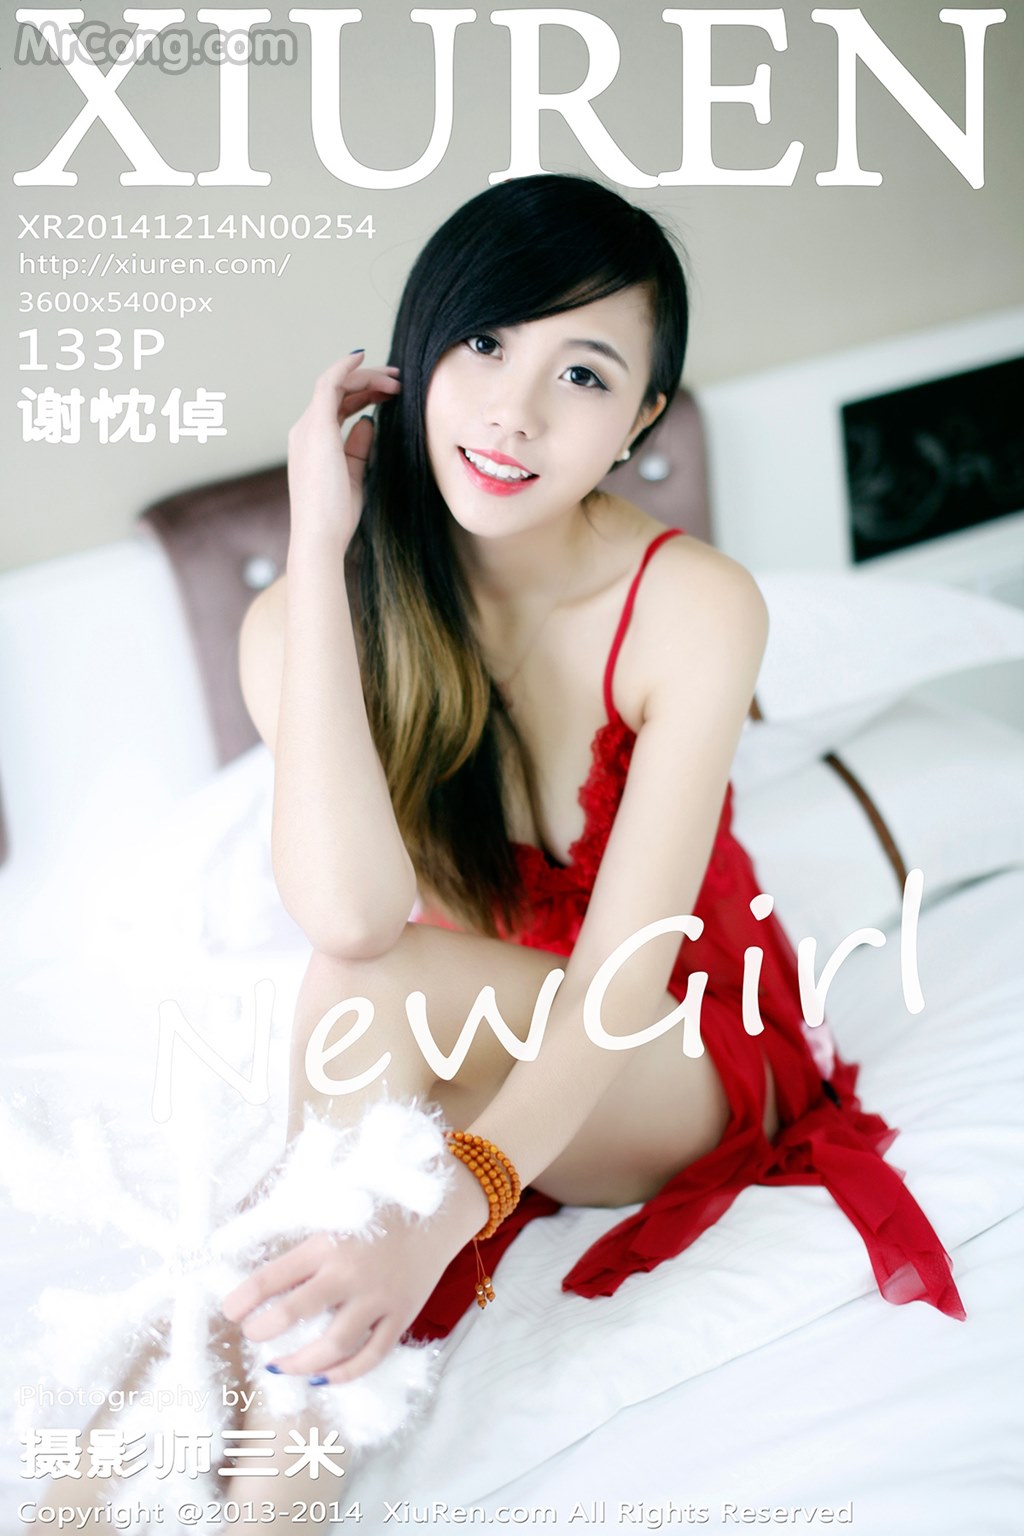 XIUREN No. 2254: Model Xie Chen Zhuo (谢忱 倬) (134 pictures)